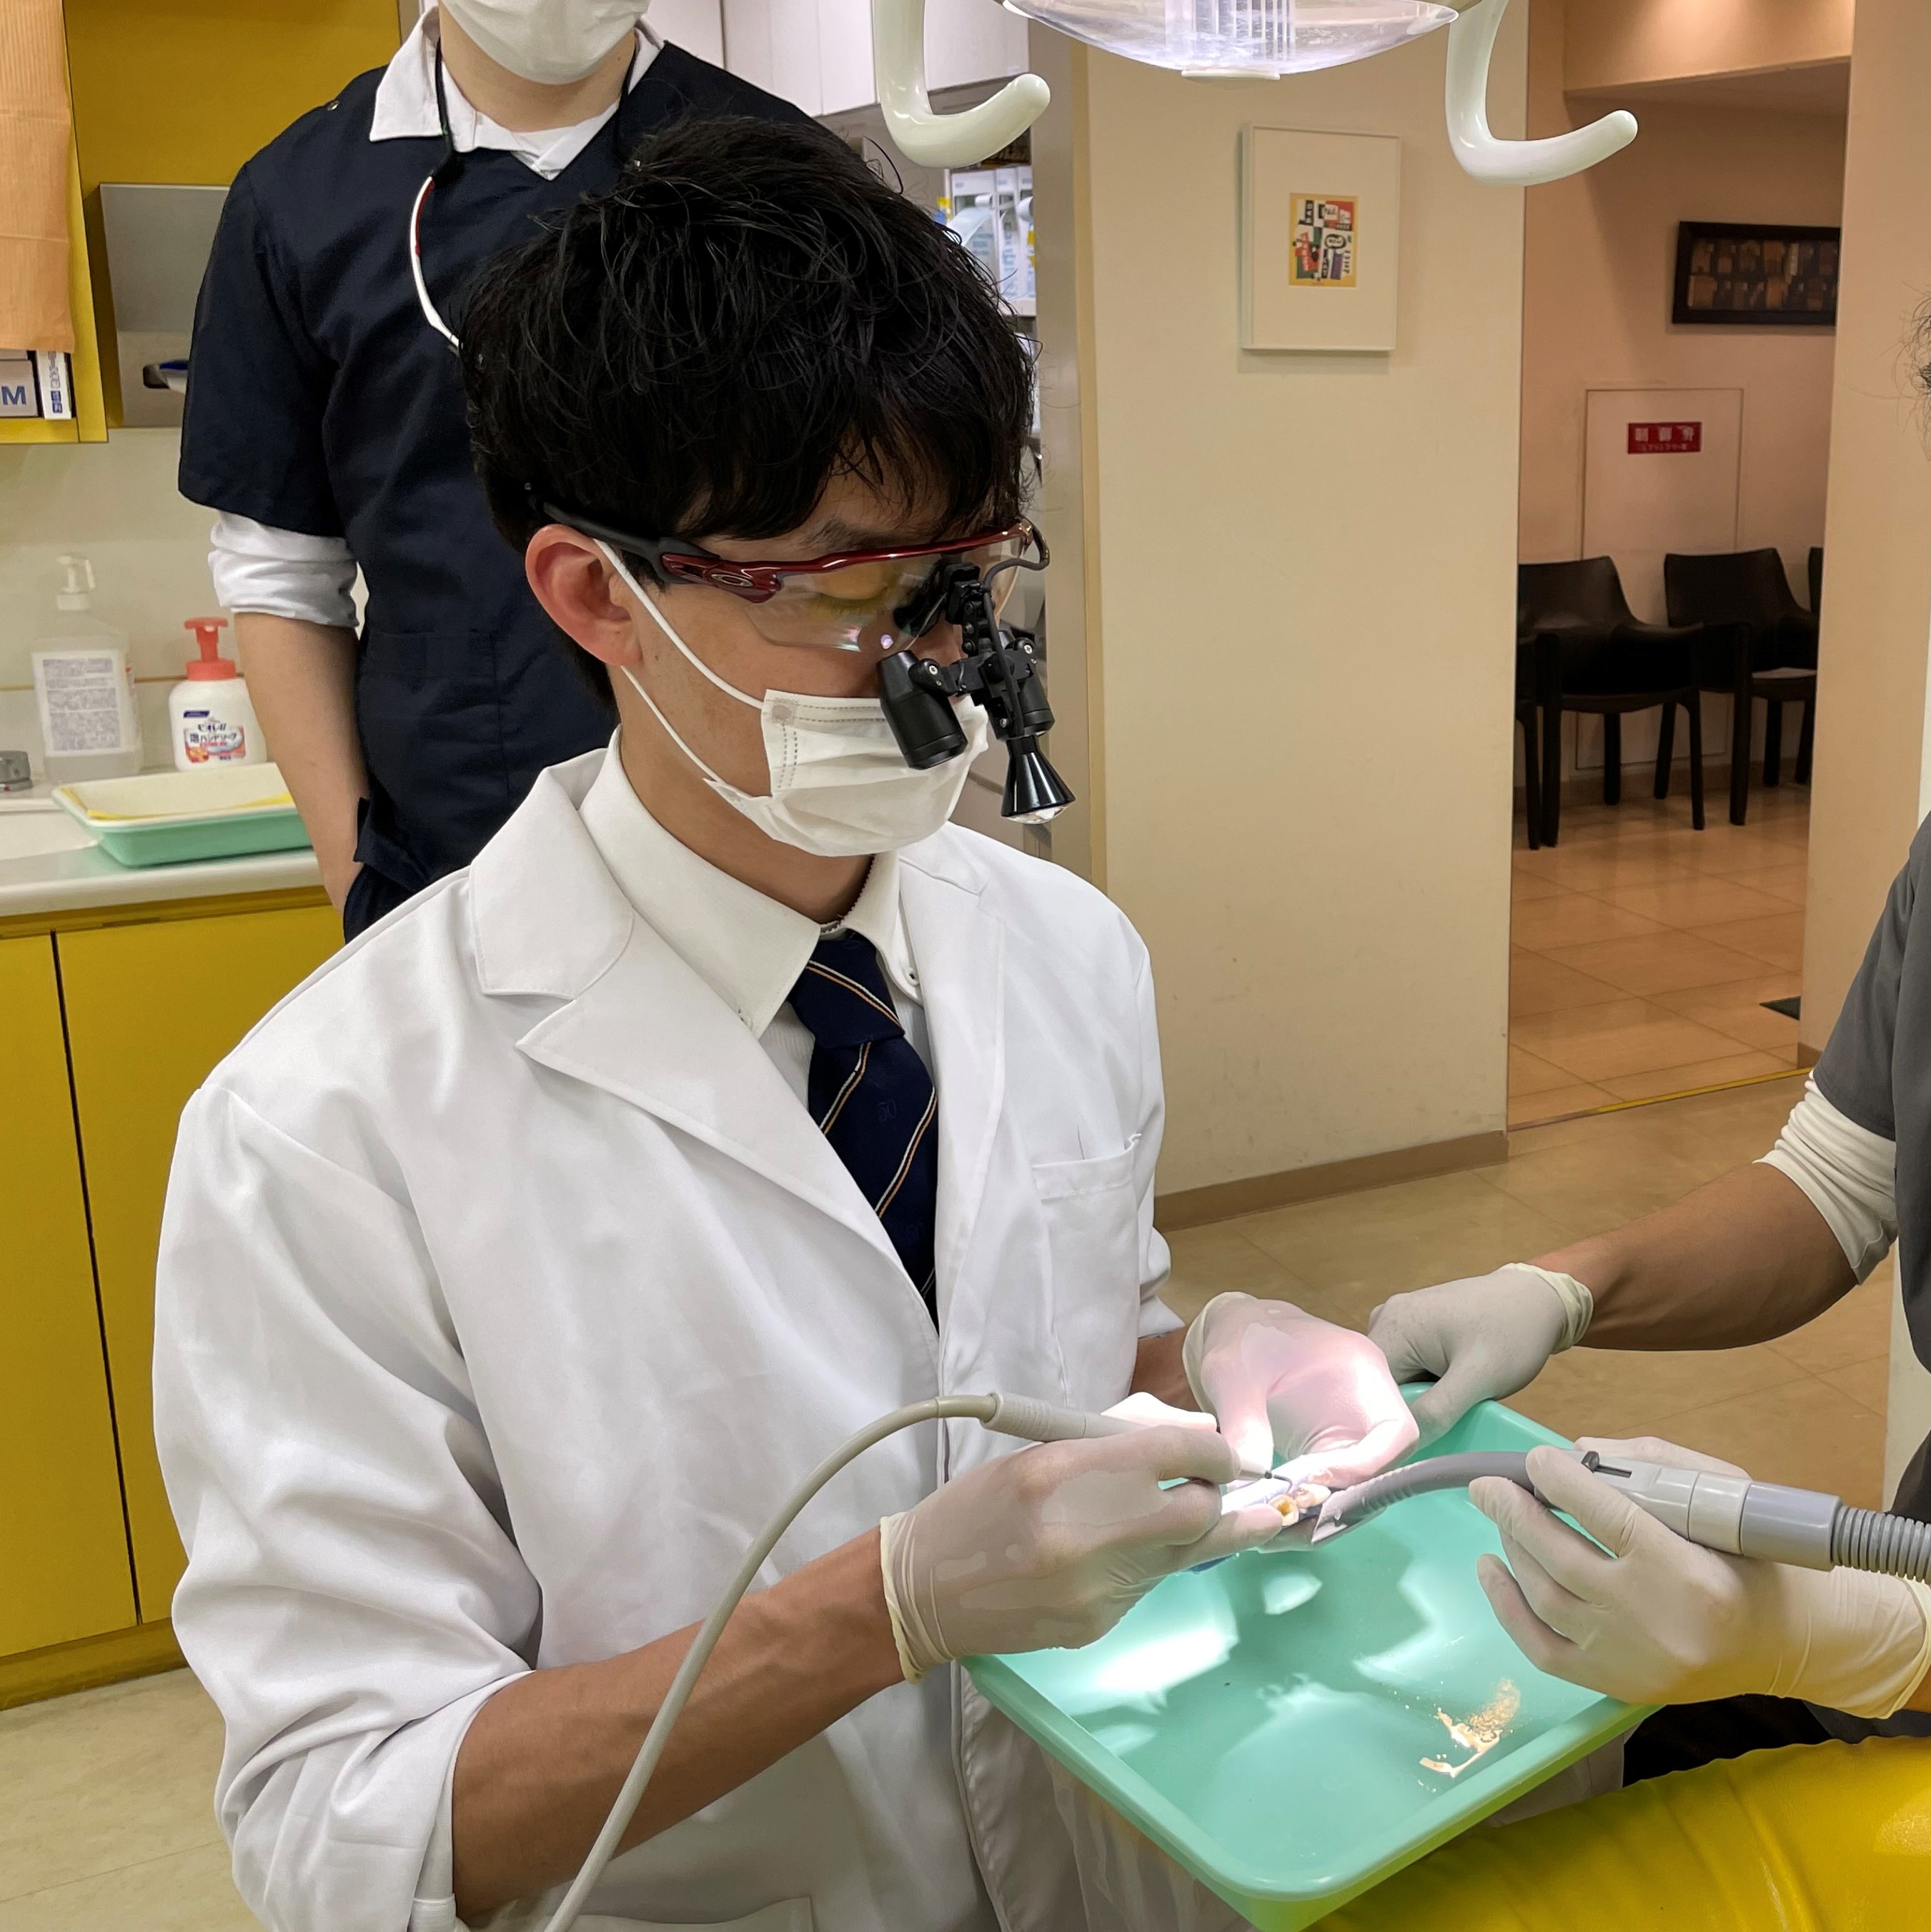 【院外講習会の受講】
院内選考に合格した研修医は
歯周病等の外部講習会を受講できます。